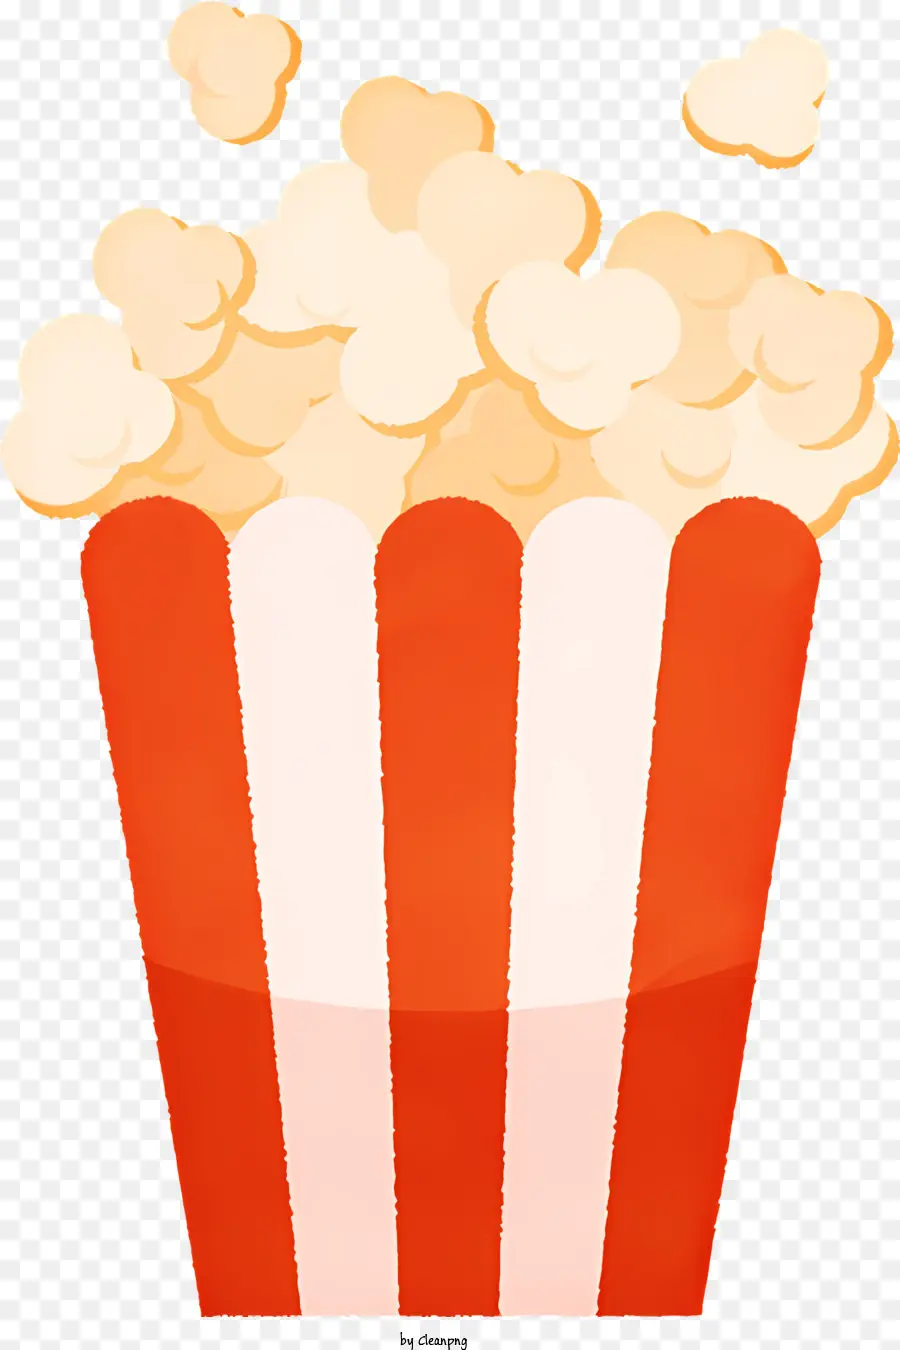 sfondo bianco - Scatola popcorn rossa e bianca con popcorn galleggiante